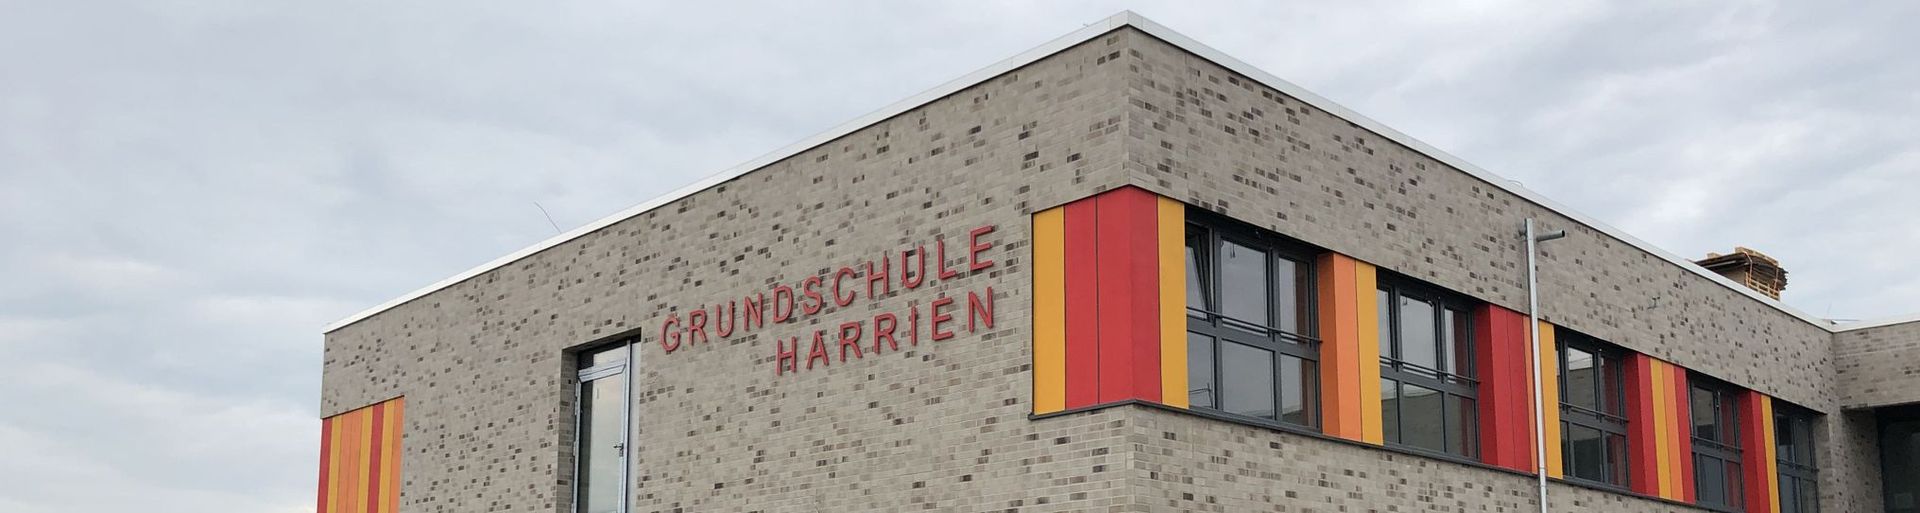 Grundschule Brake-Harrien -Neubau einer zweigeschossigen Grundschule mit Sporthalle in Brake -Außenansicht Schulgebäude in der Bauphase